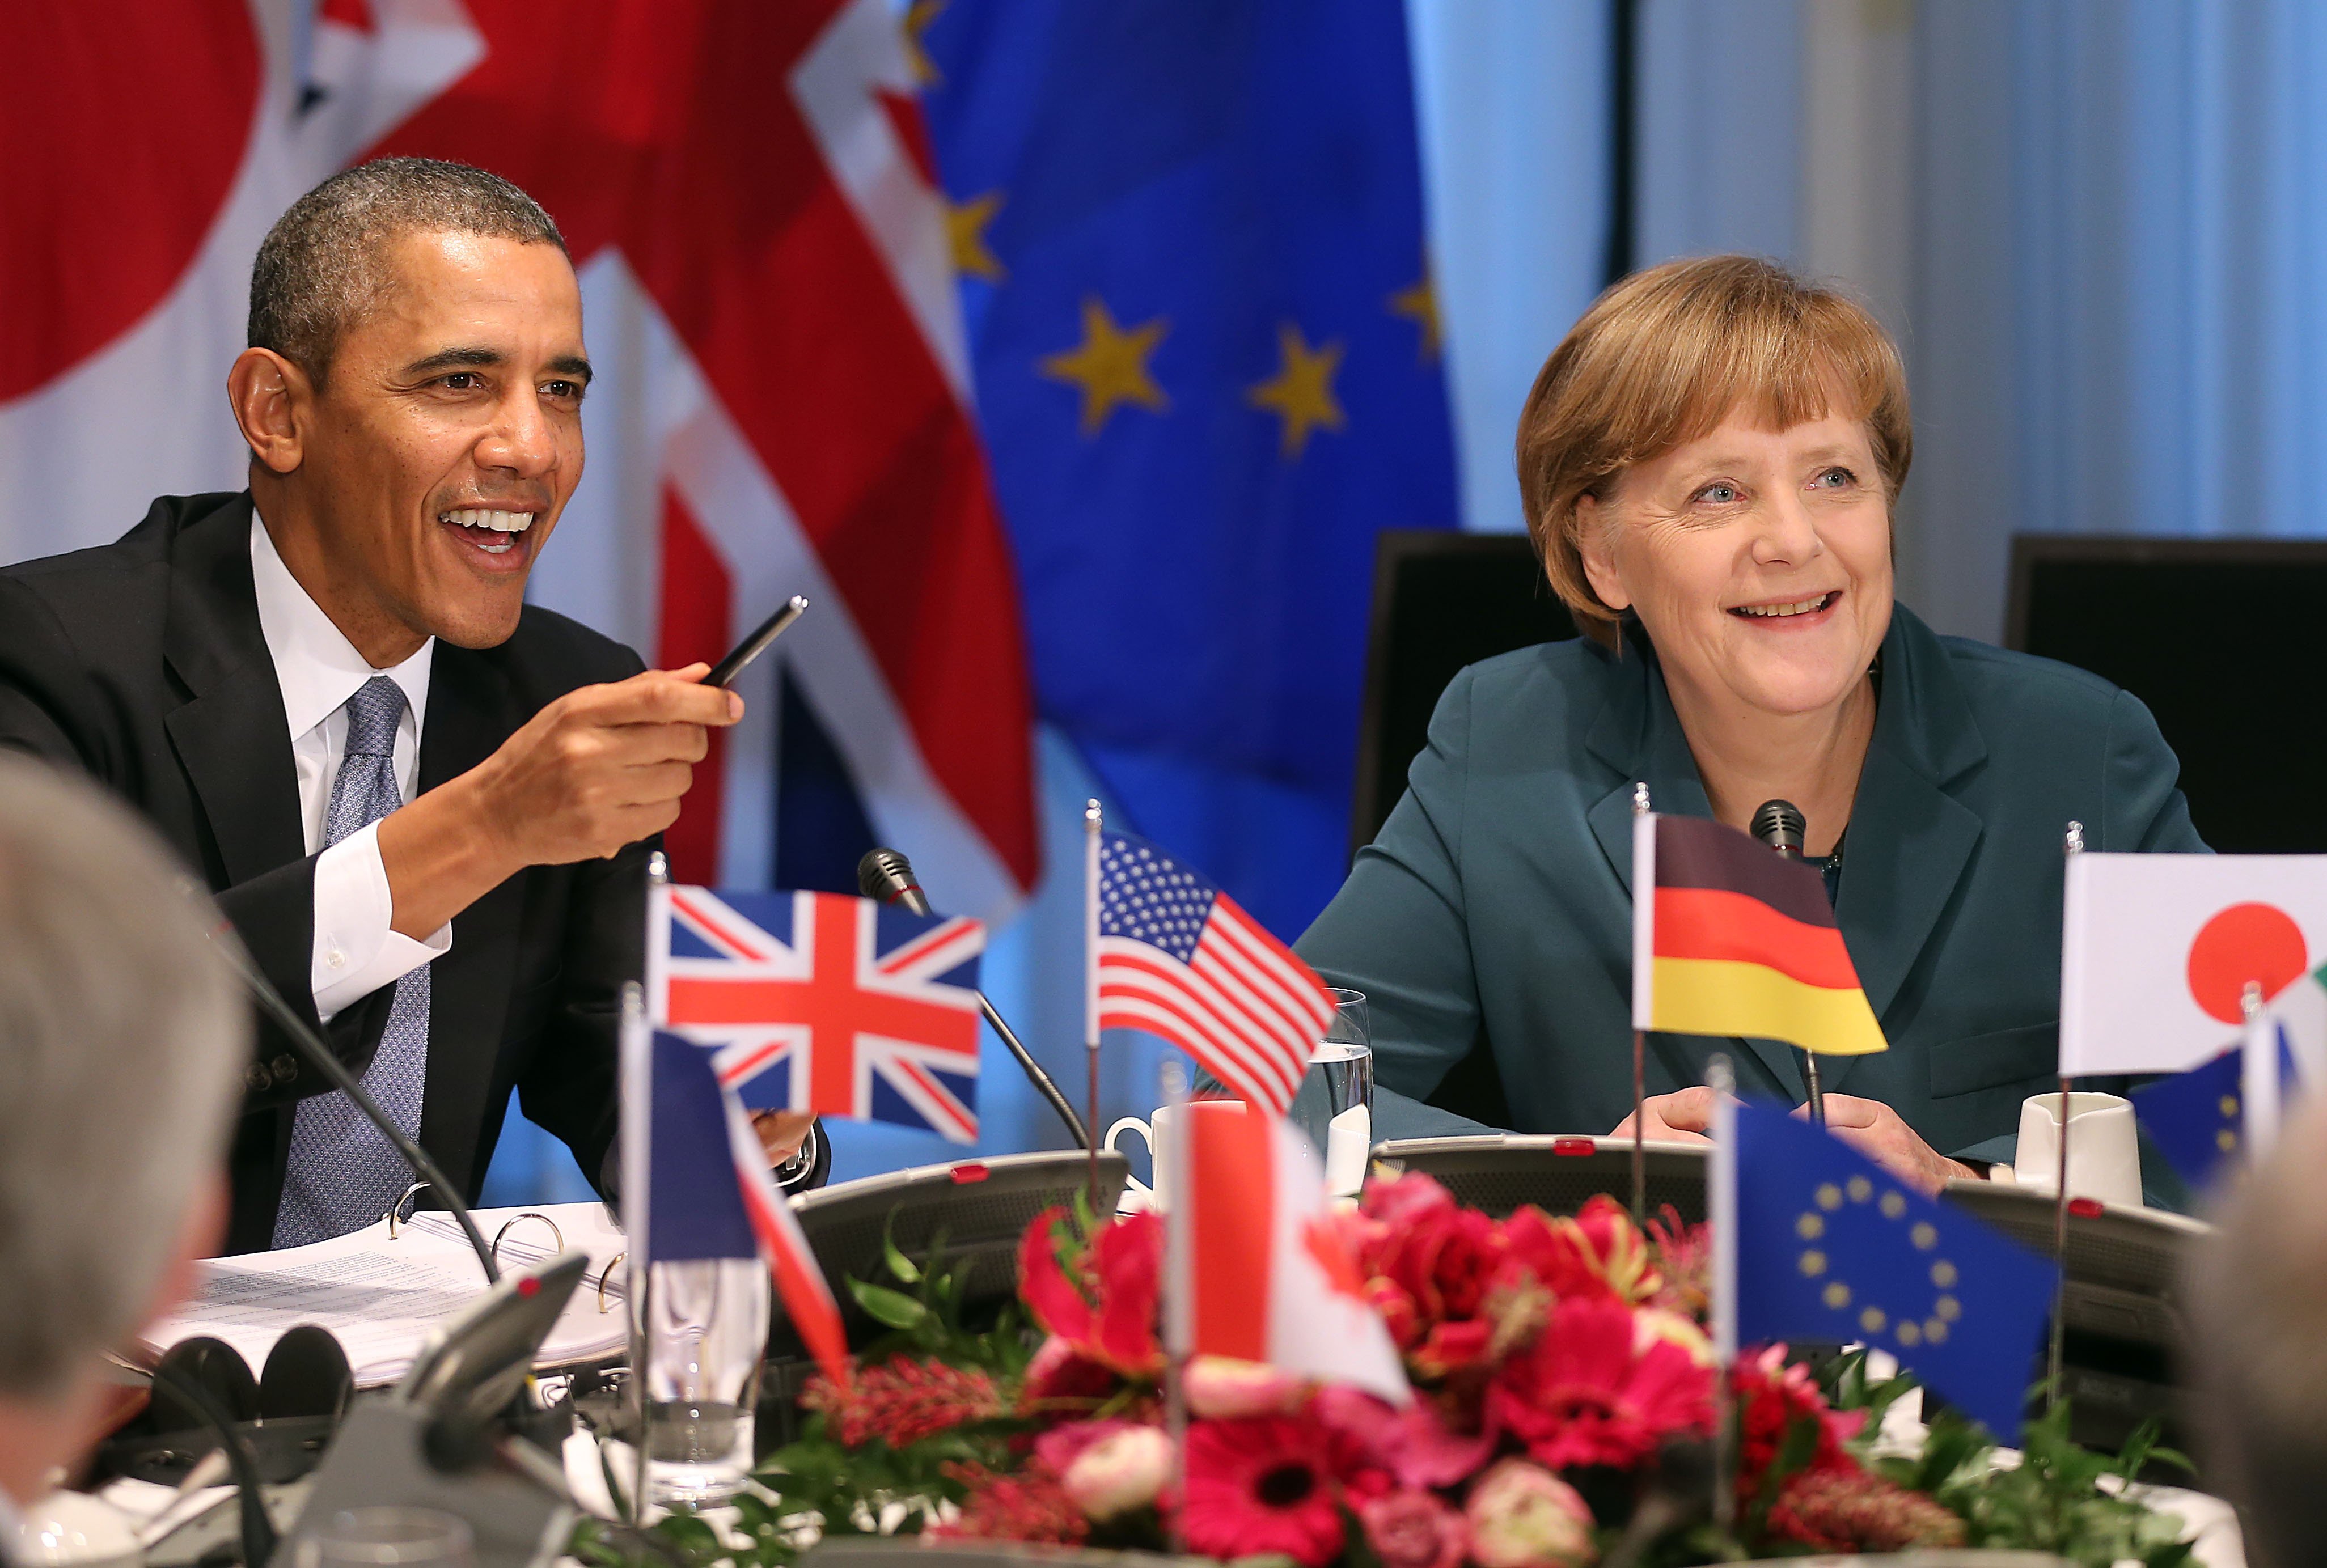 G7 Leaders Discuss Ukraine Crisis